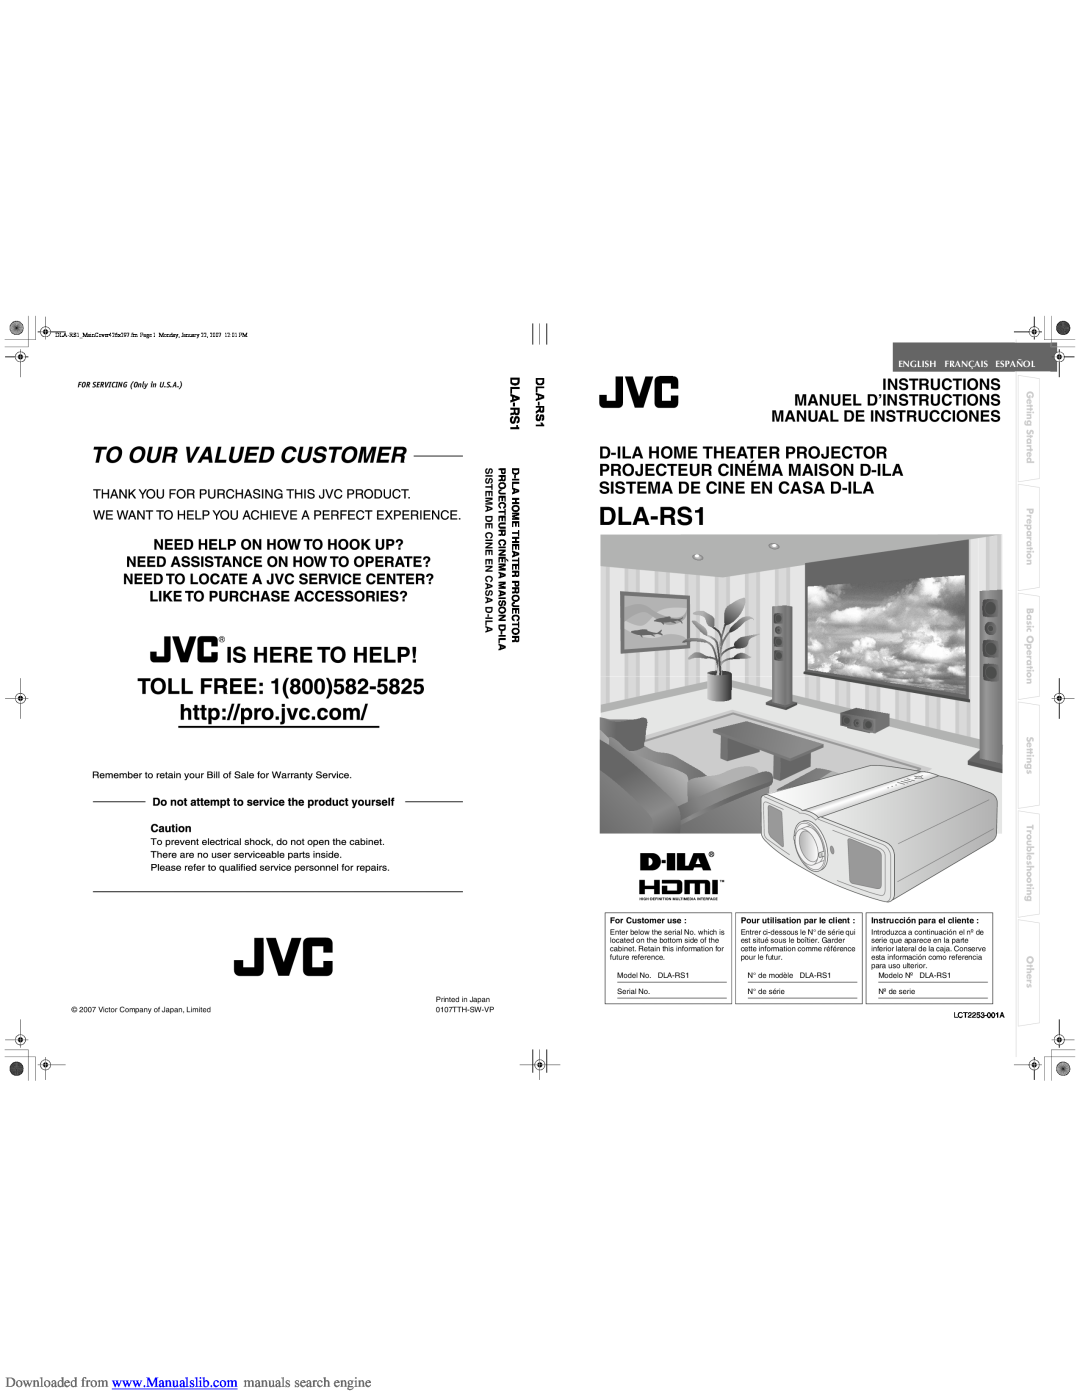 JVC DLA-RS1 manual D-Ilahome Theater Projector, Projecteur Cinéma Maison D-Ila, Sistema De Cine En Casa D-Ila, Getting 